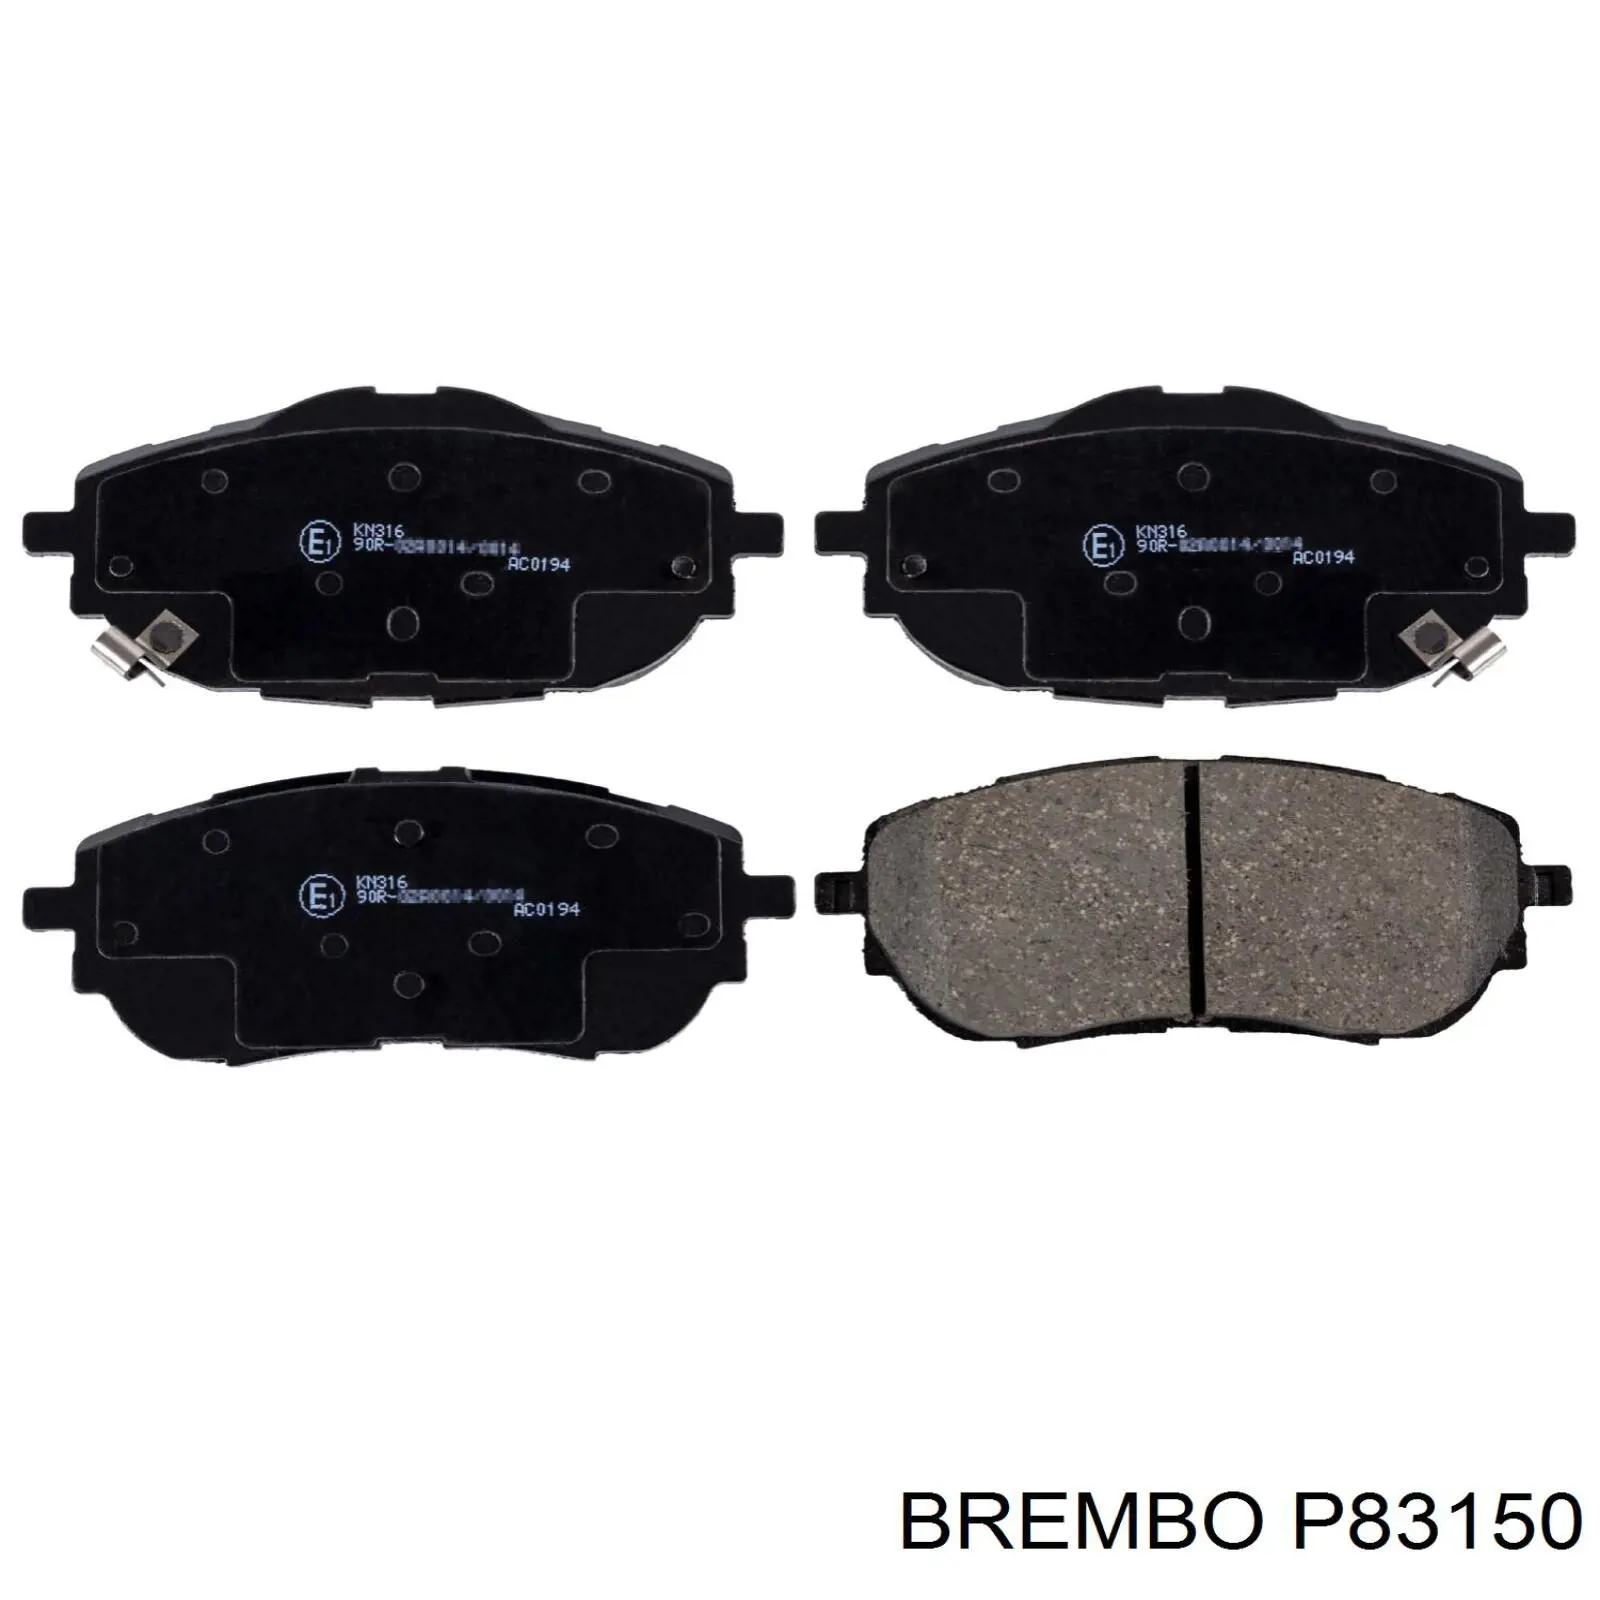 Pastillas de freno delanteras P83150 Brembo